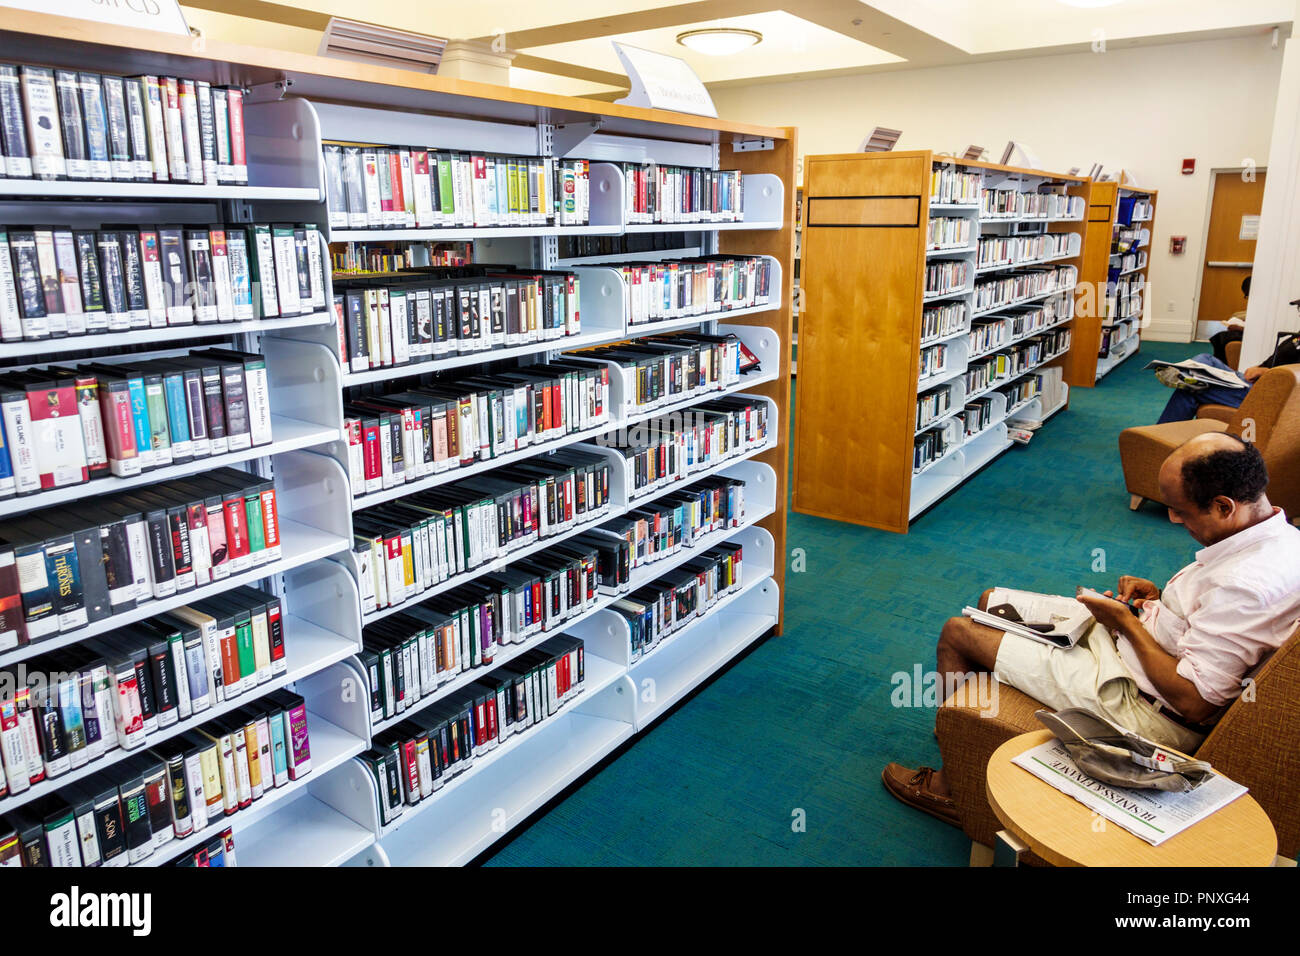 West Palm Beach Florida, bibliothèque publique Mandel, intérieur, livres étagères, homme asiatique hommes hommes hommes, FL180212102 Banque D'Images